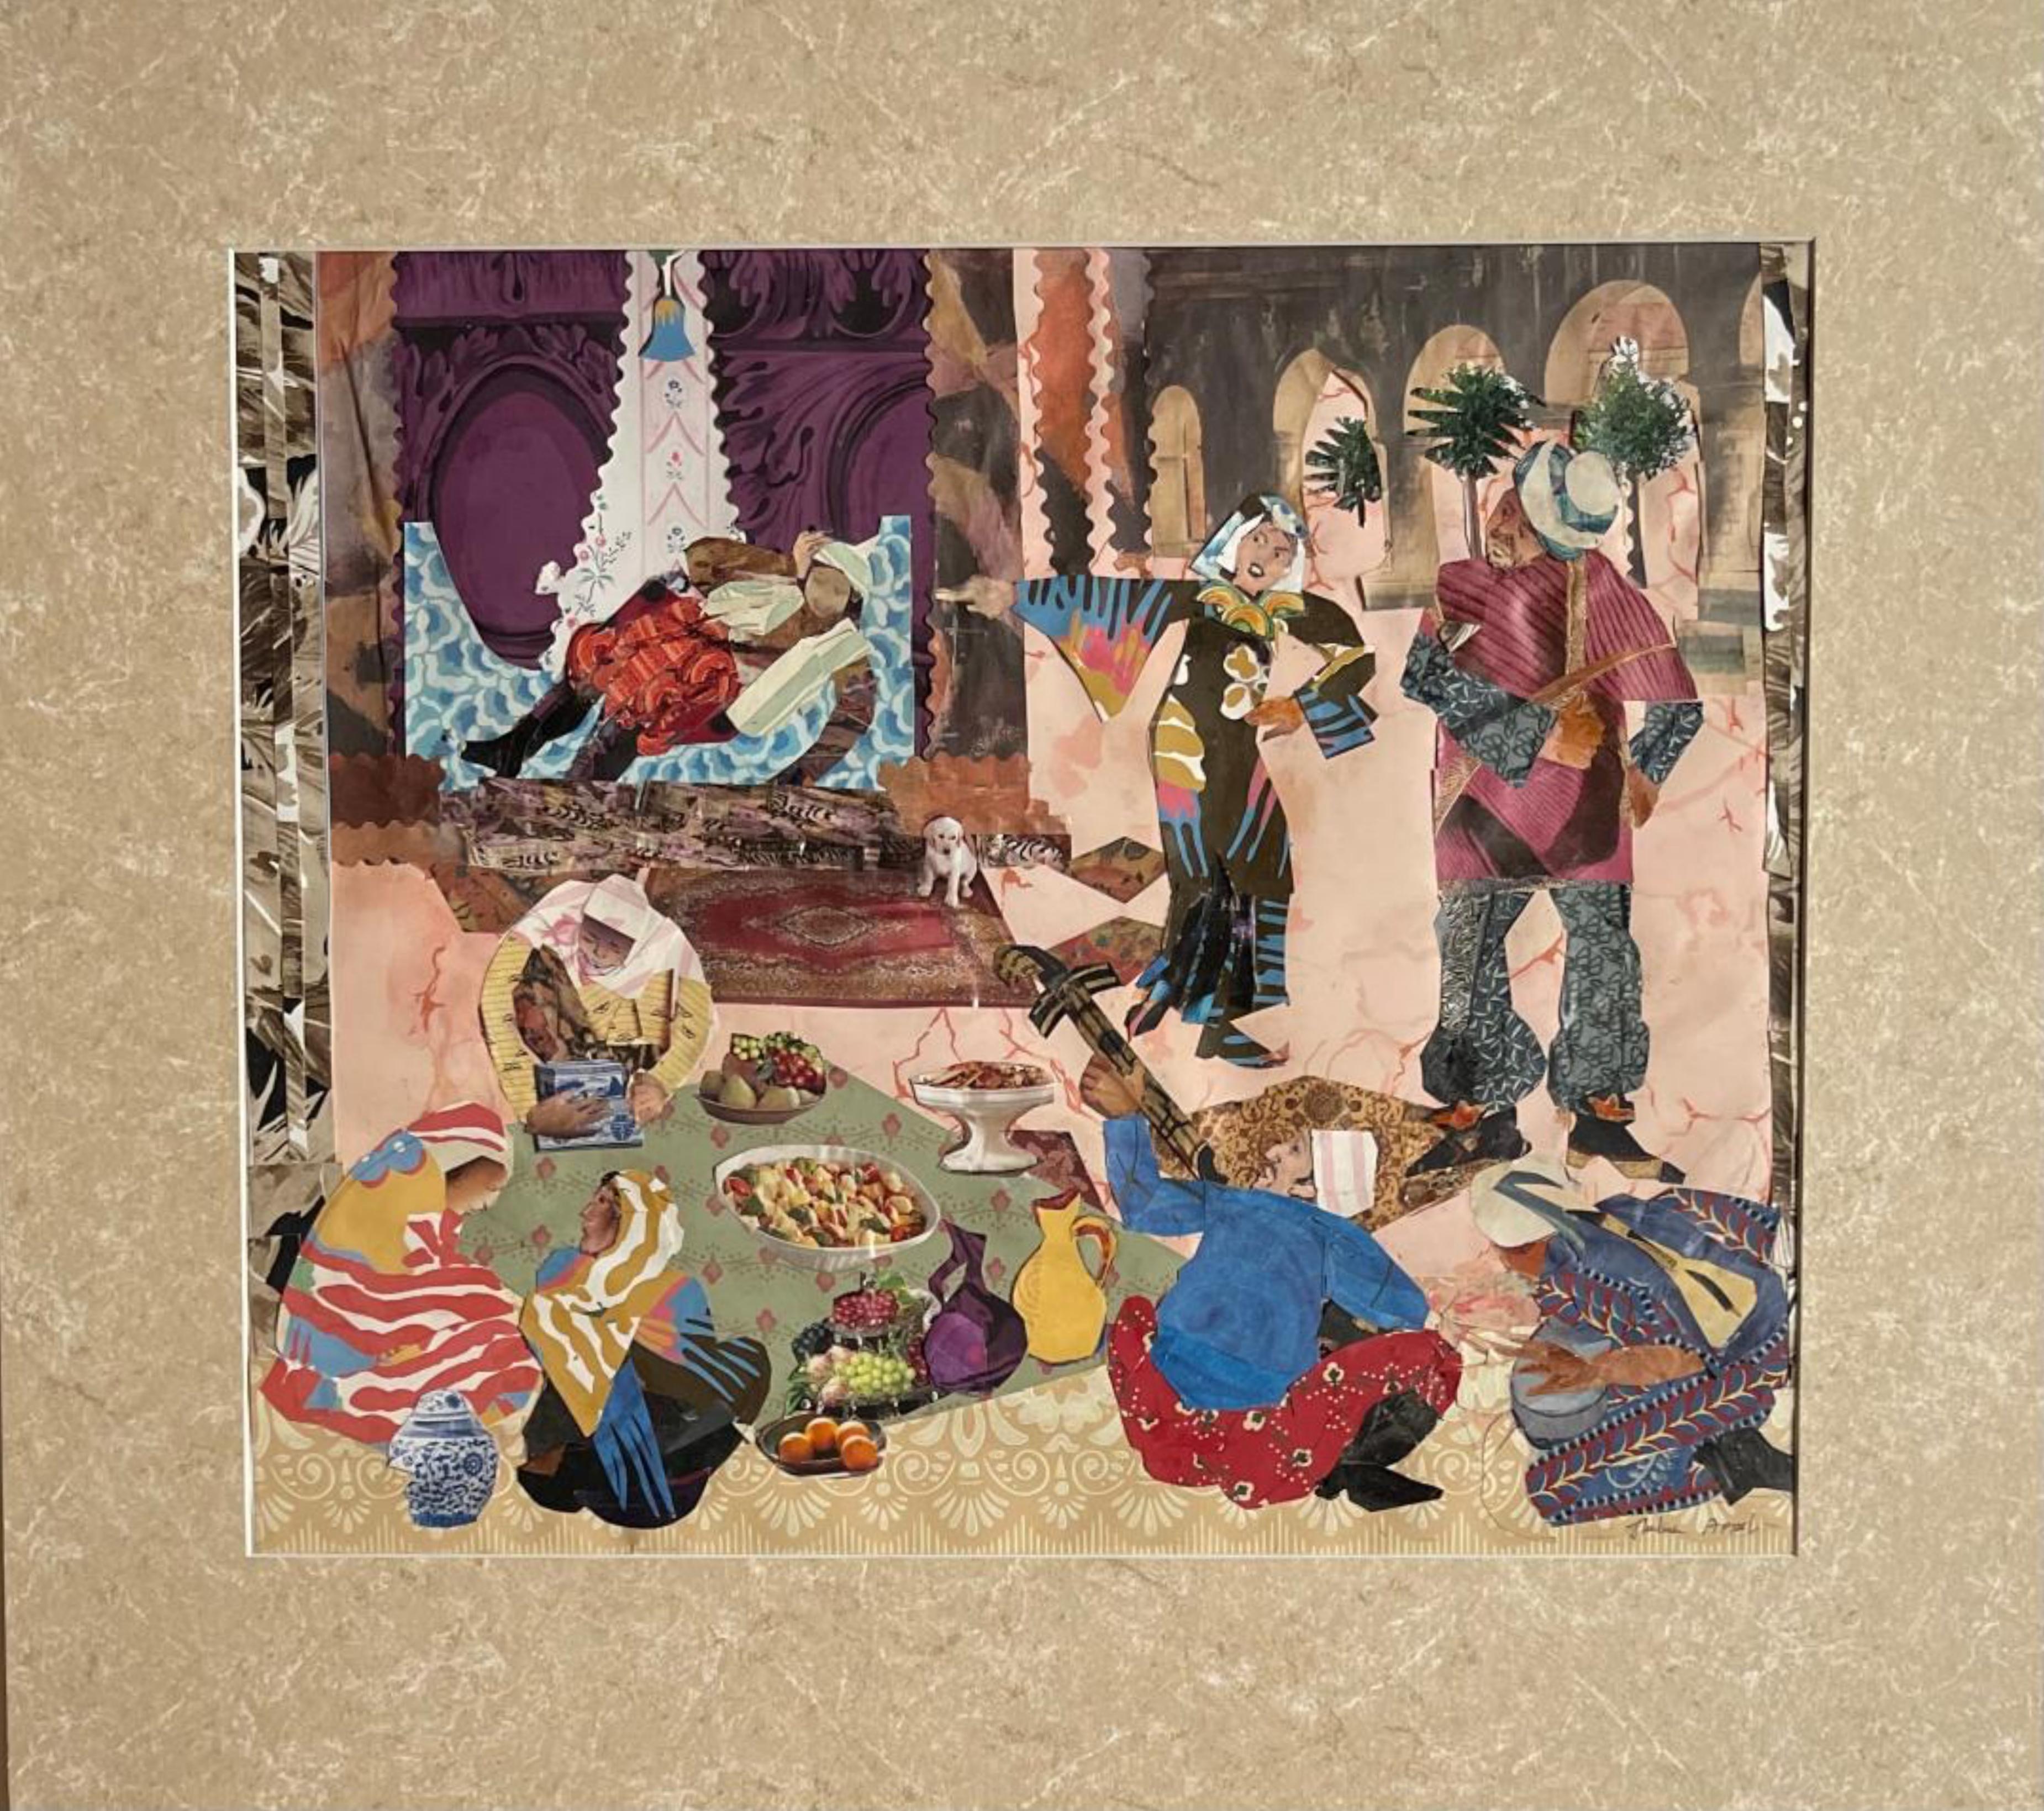 Esthers zweites Bankett (Hamans Verrat aufgedeckt), Purim Collage #14 (Zeitgenössisch), Mixed Media Art, von Thelma Appel